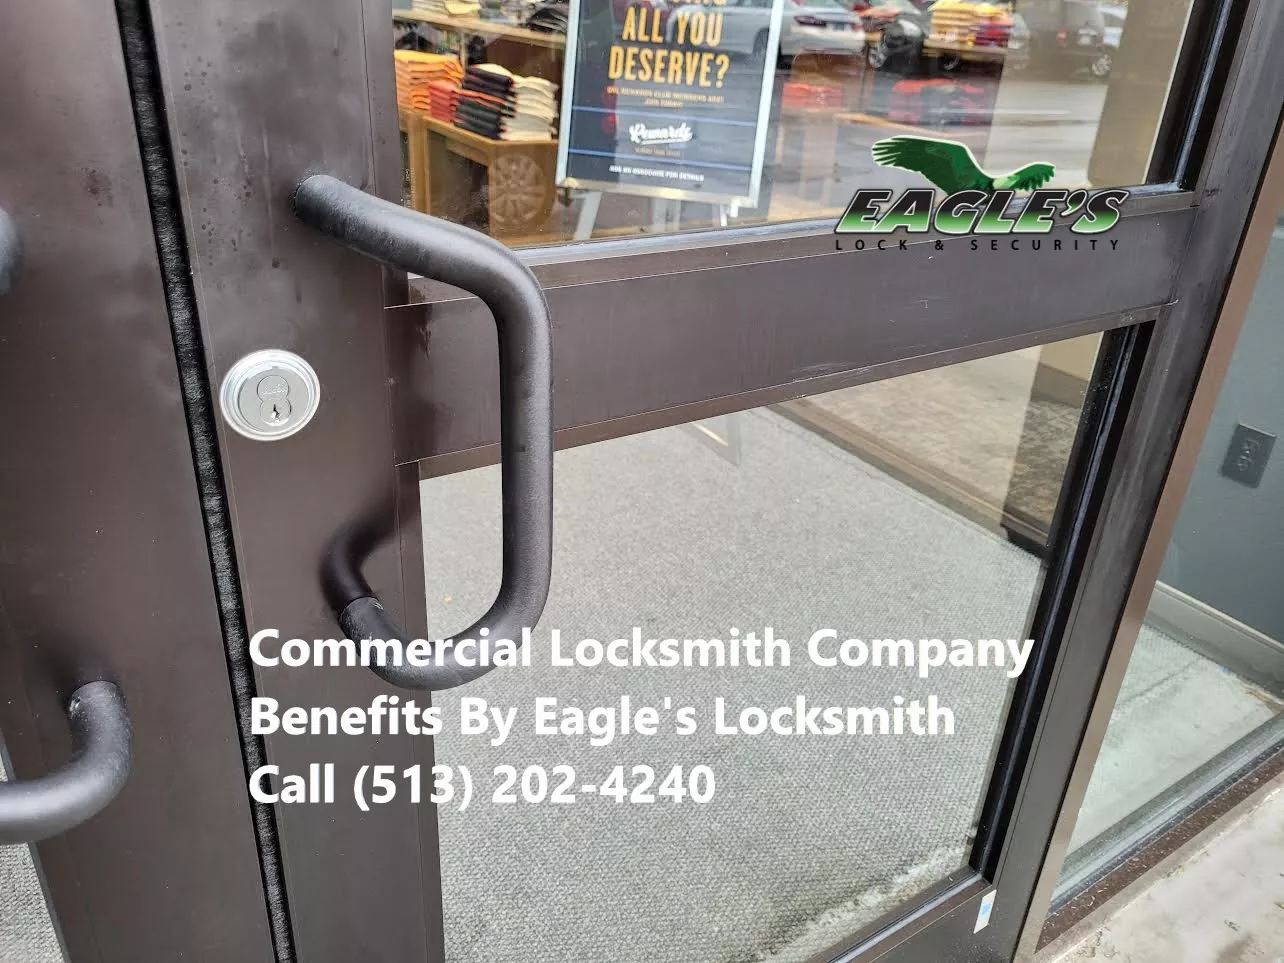 Commercial Locksmith Company Benefits